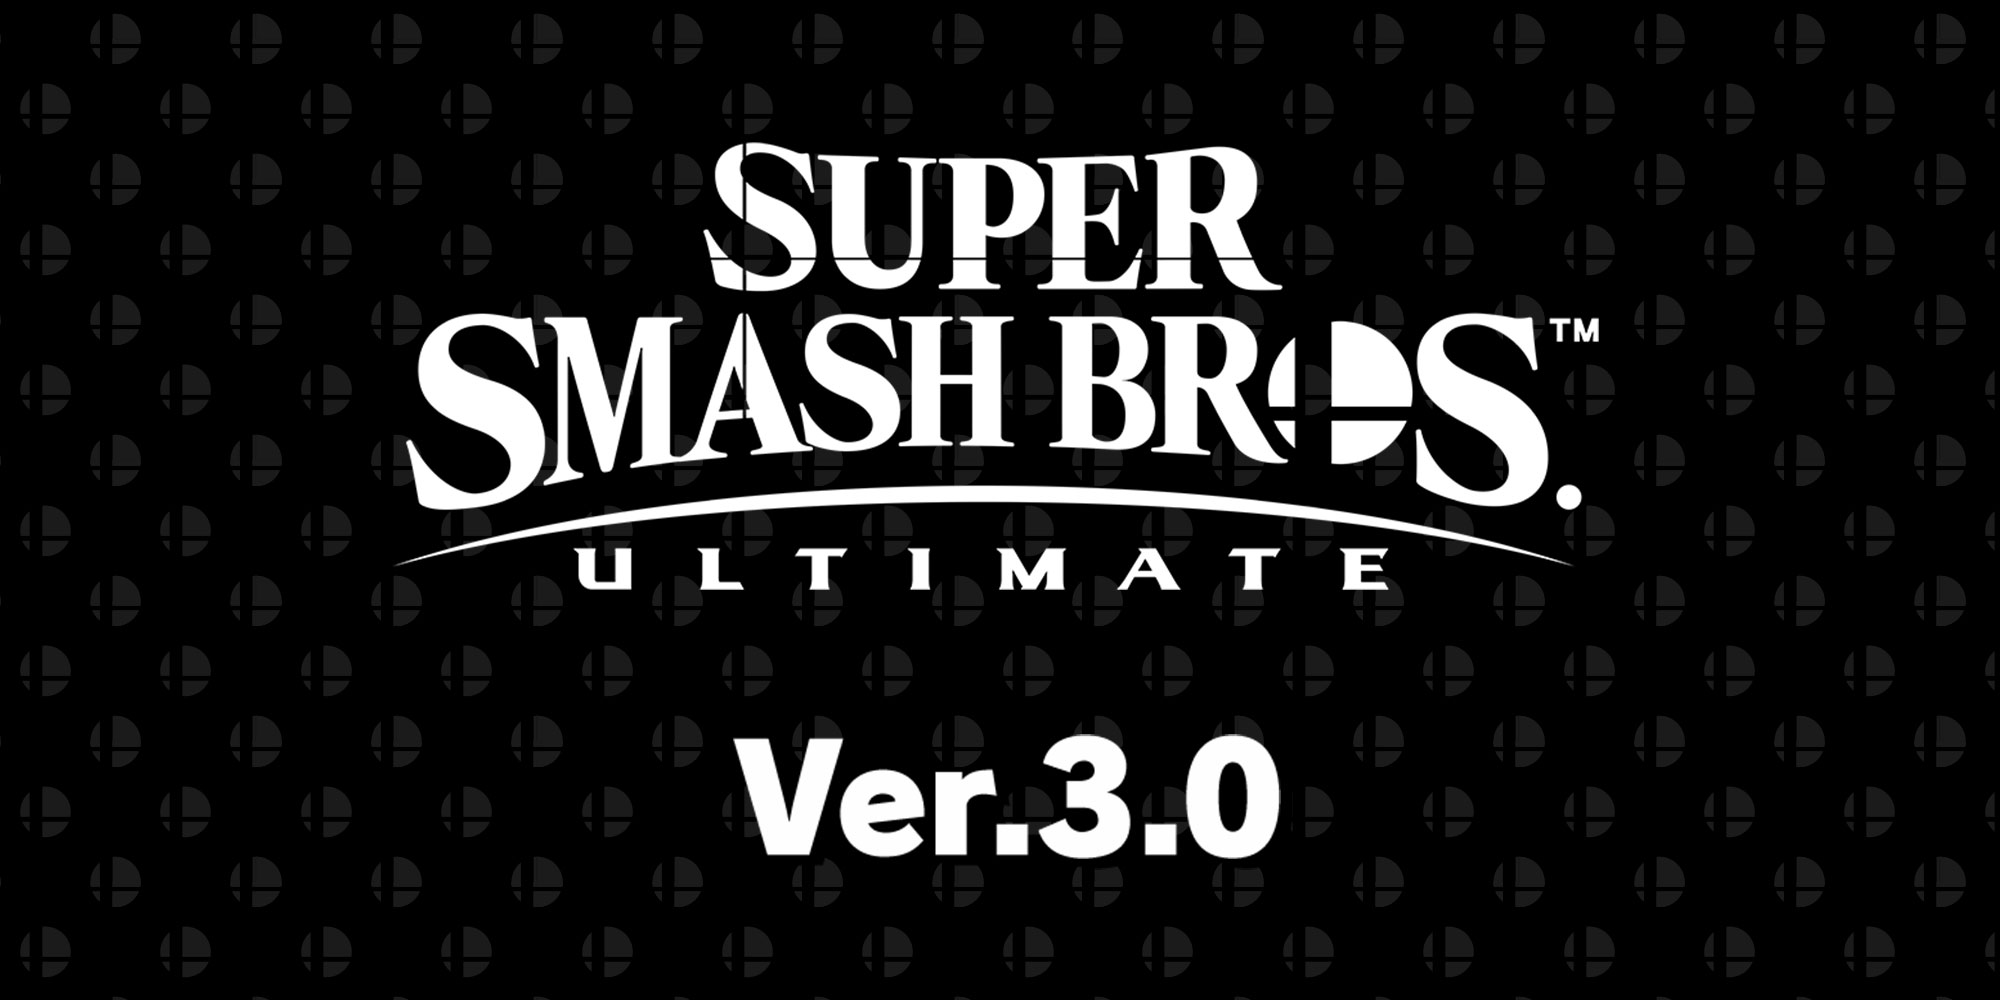 Джокер из Persona 5 появится в Super Smash Bros. Ultimate 18 апреля!